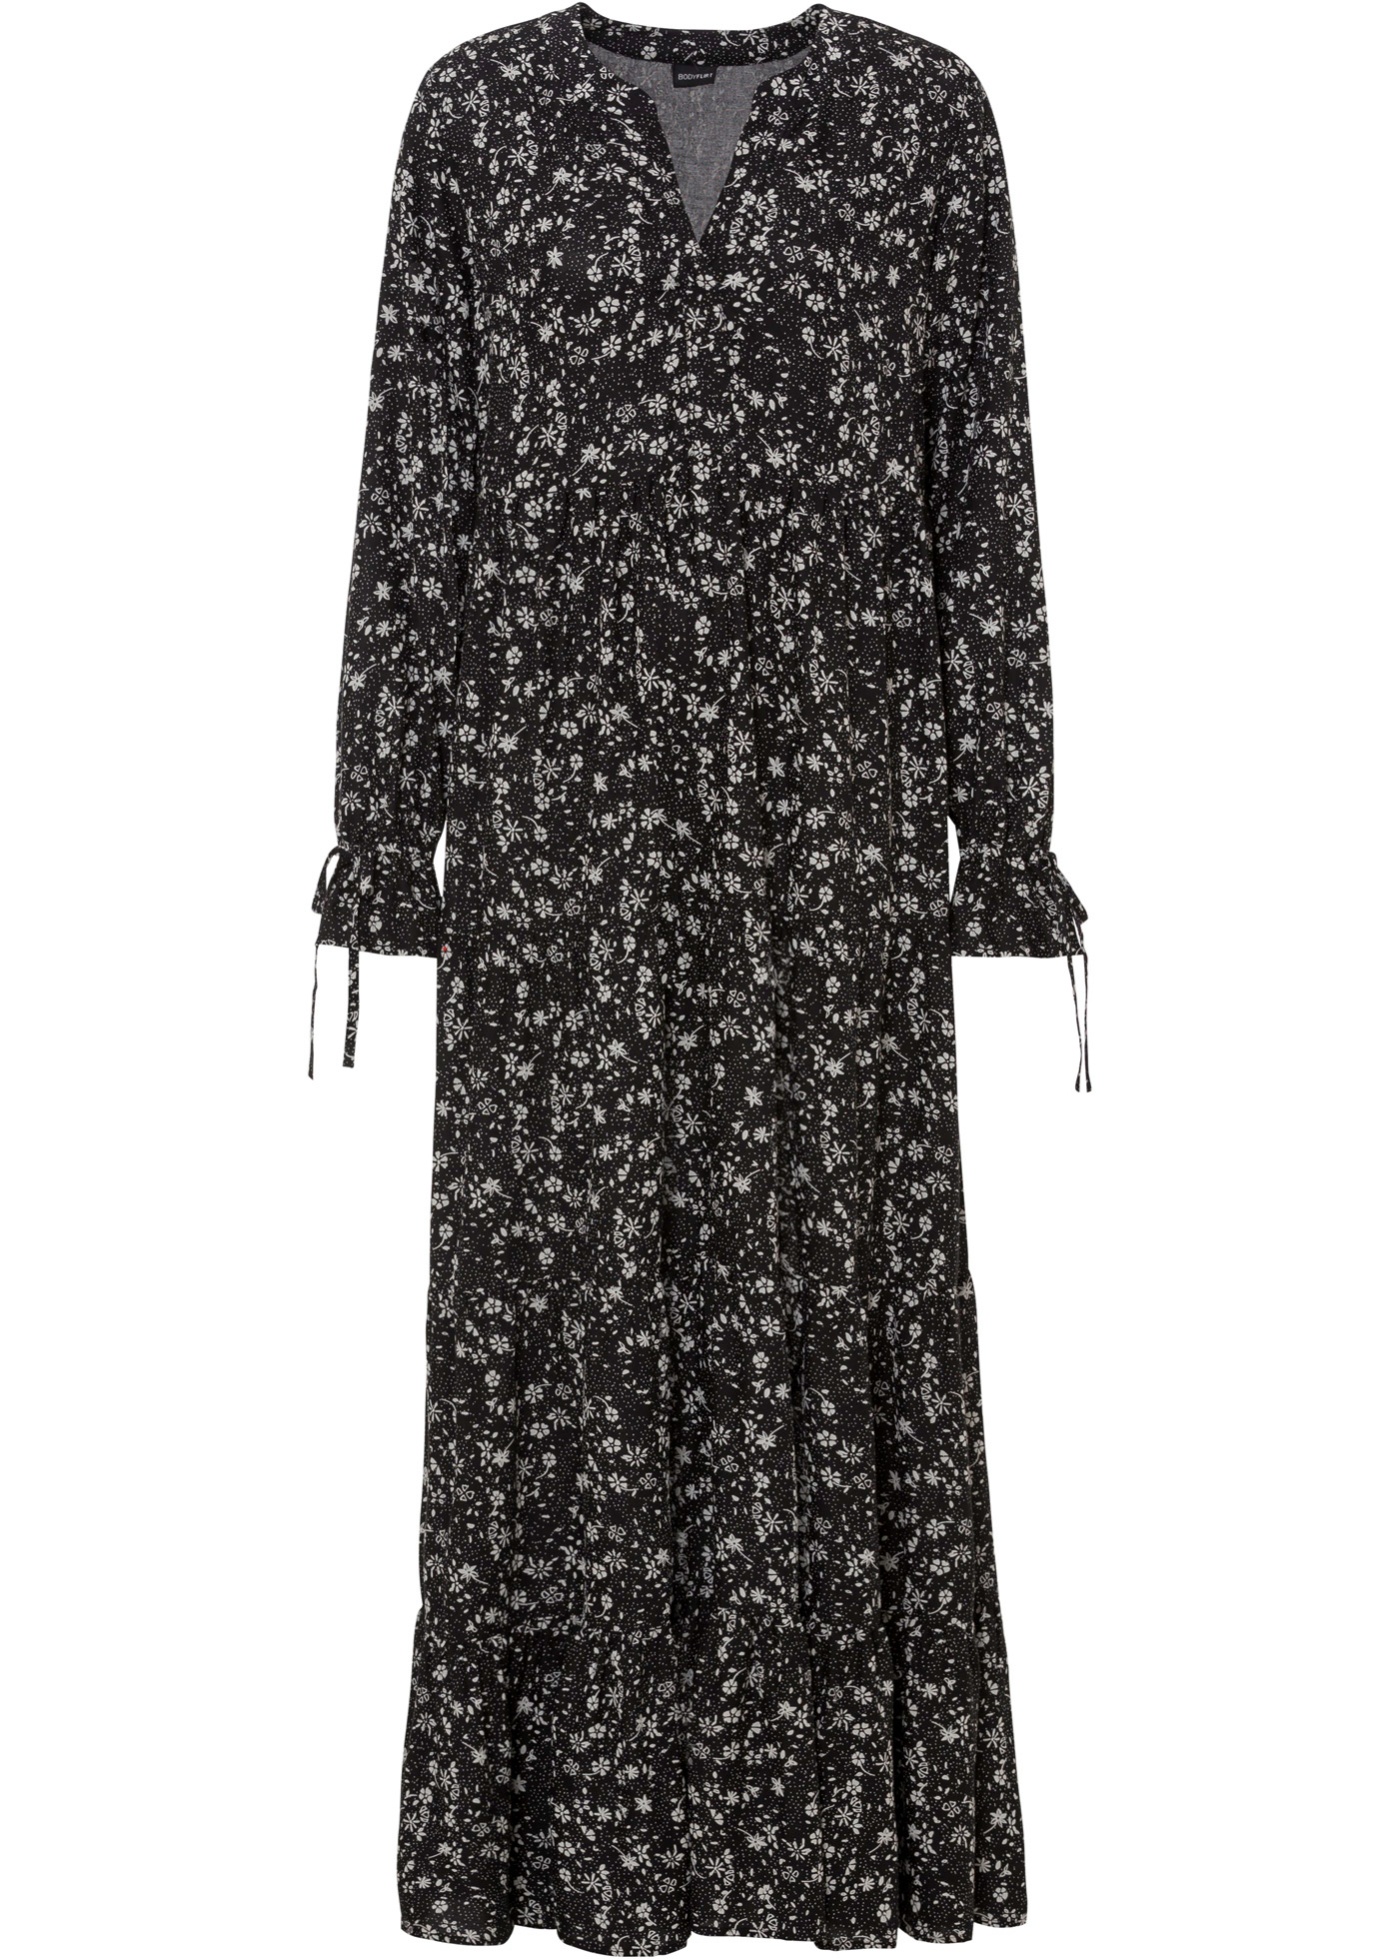 Sukienka Długa sukienka ze zrównoważonej wiskozy z nadrukiem, krótsza długość